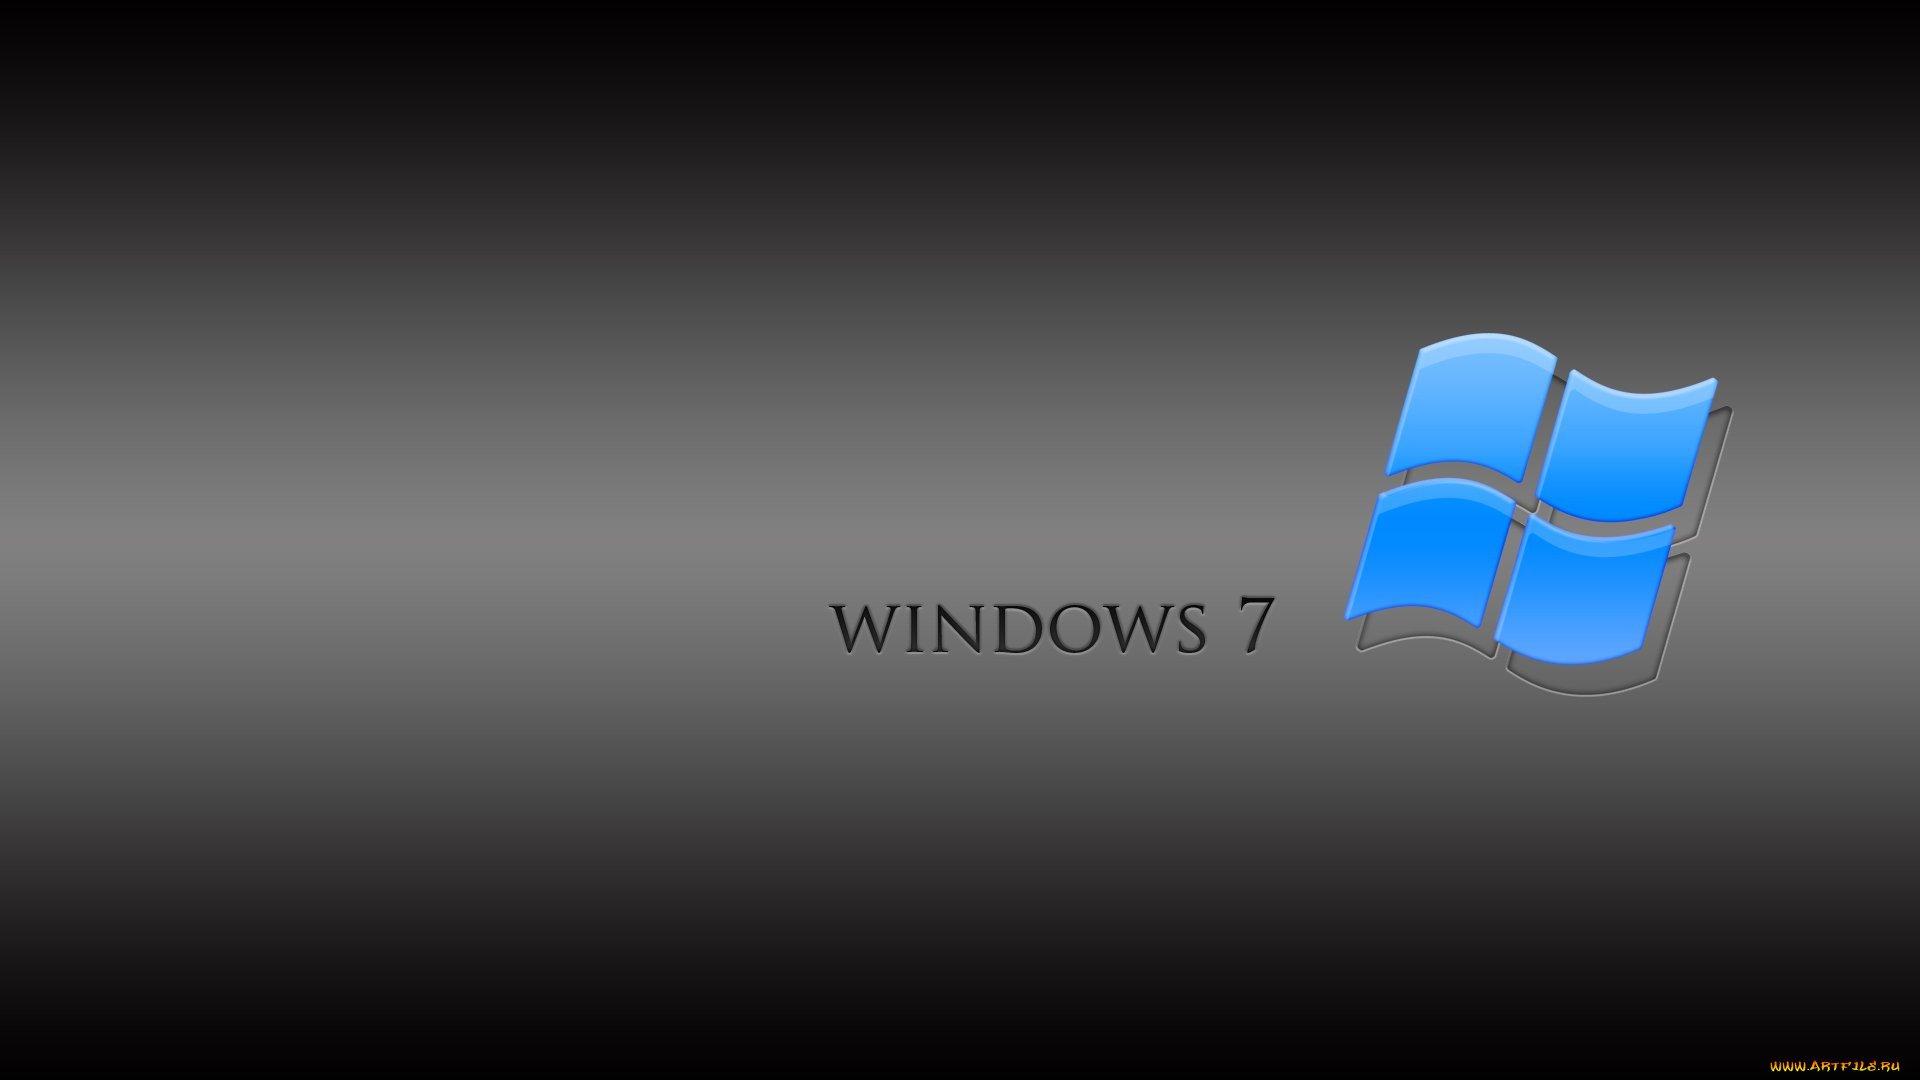 Компьютер на телефон виндовс 7. Фоновые изображения для рабочего стола Windows 7. Обои Windows 7. Стандартная заставка виндовс. Windows 7 рабочий стол.